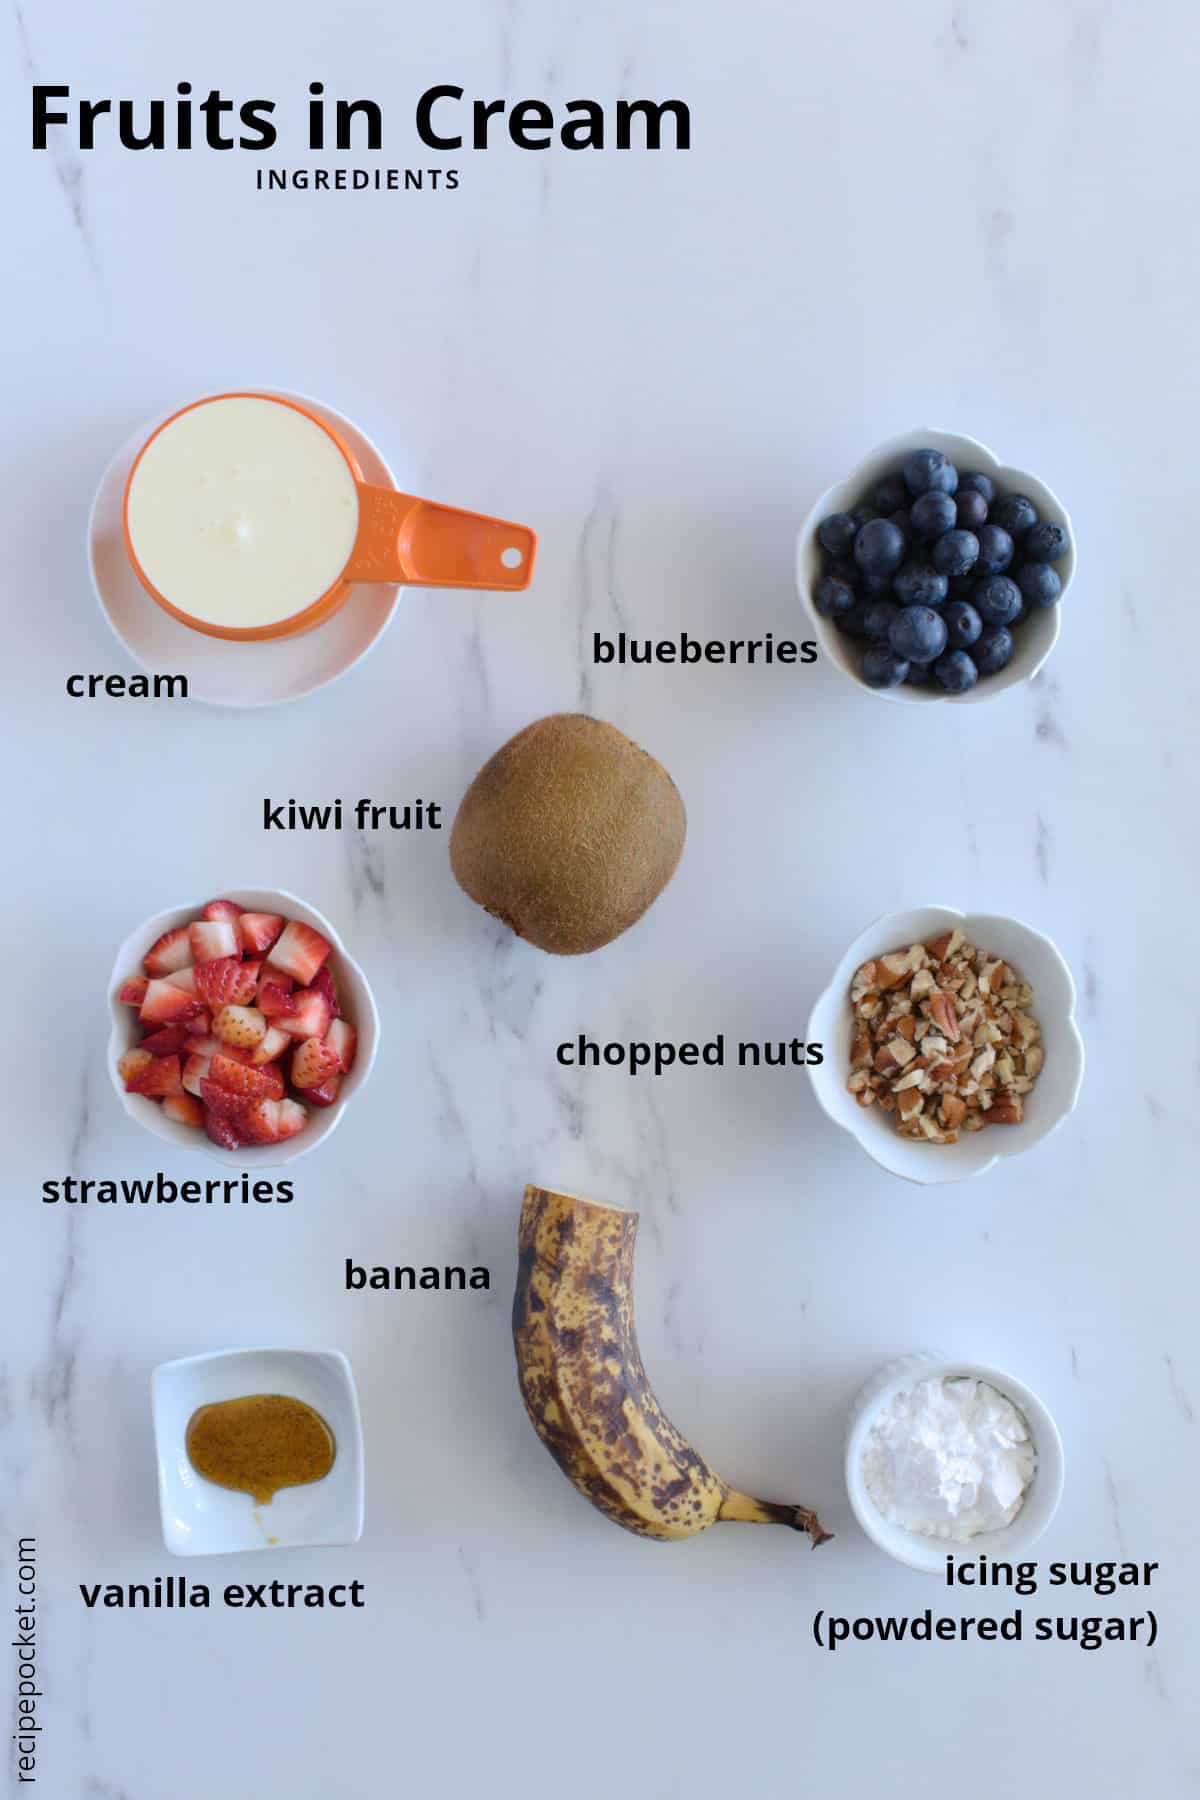 Ingredient image for fruits in cream dessert recipe.